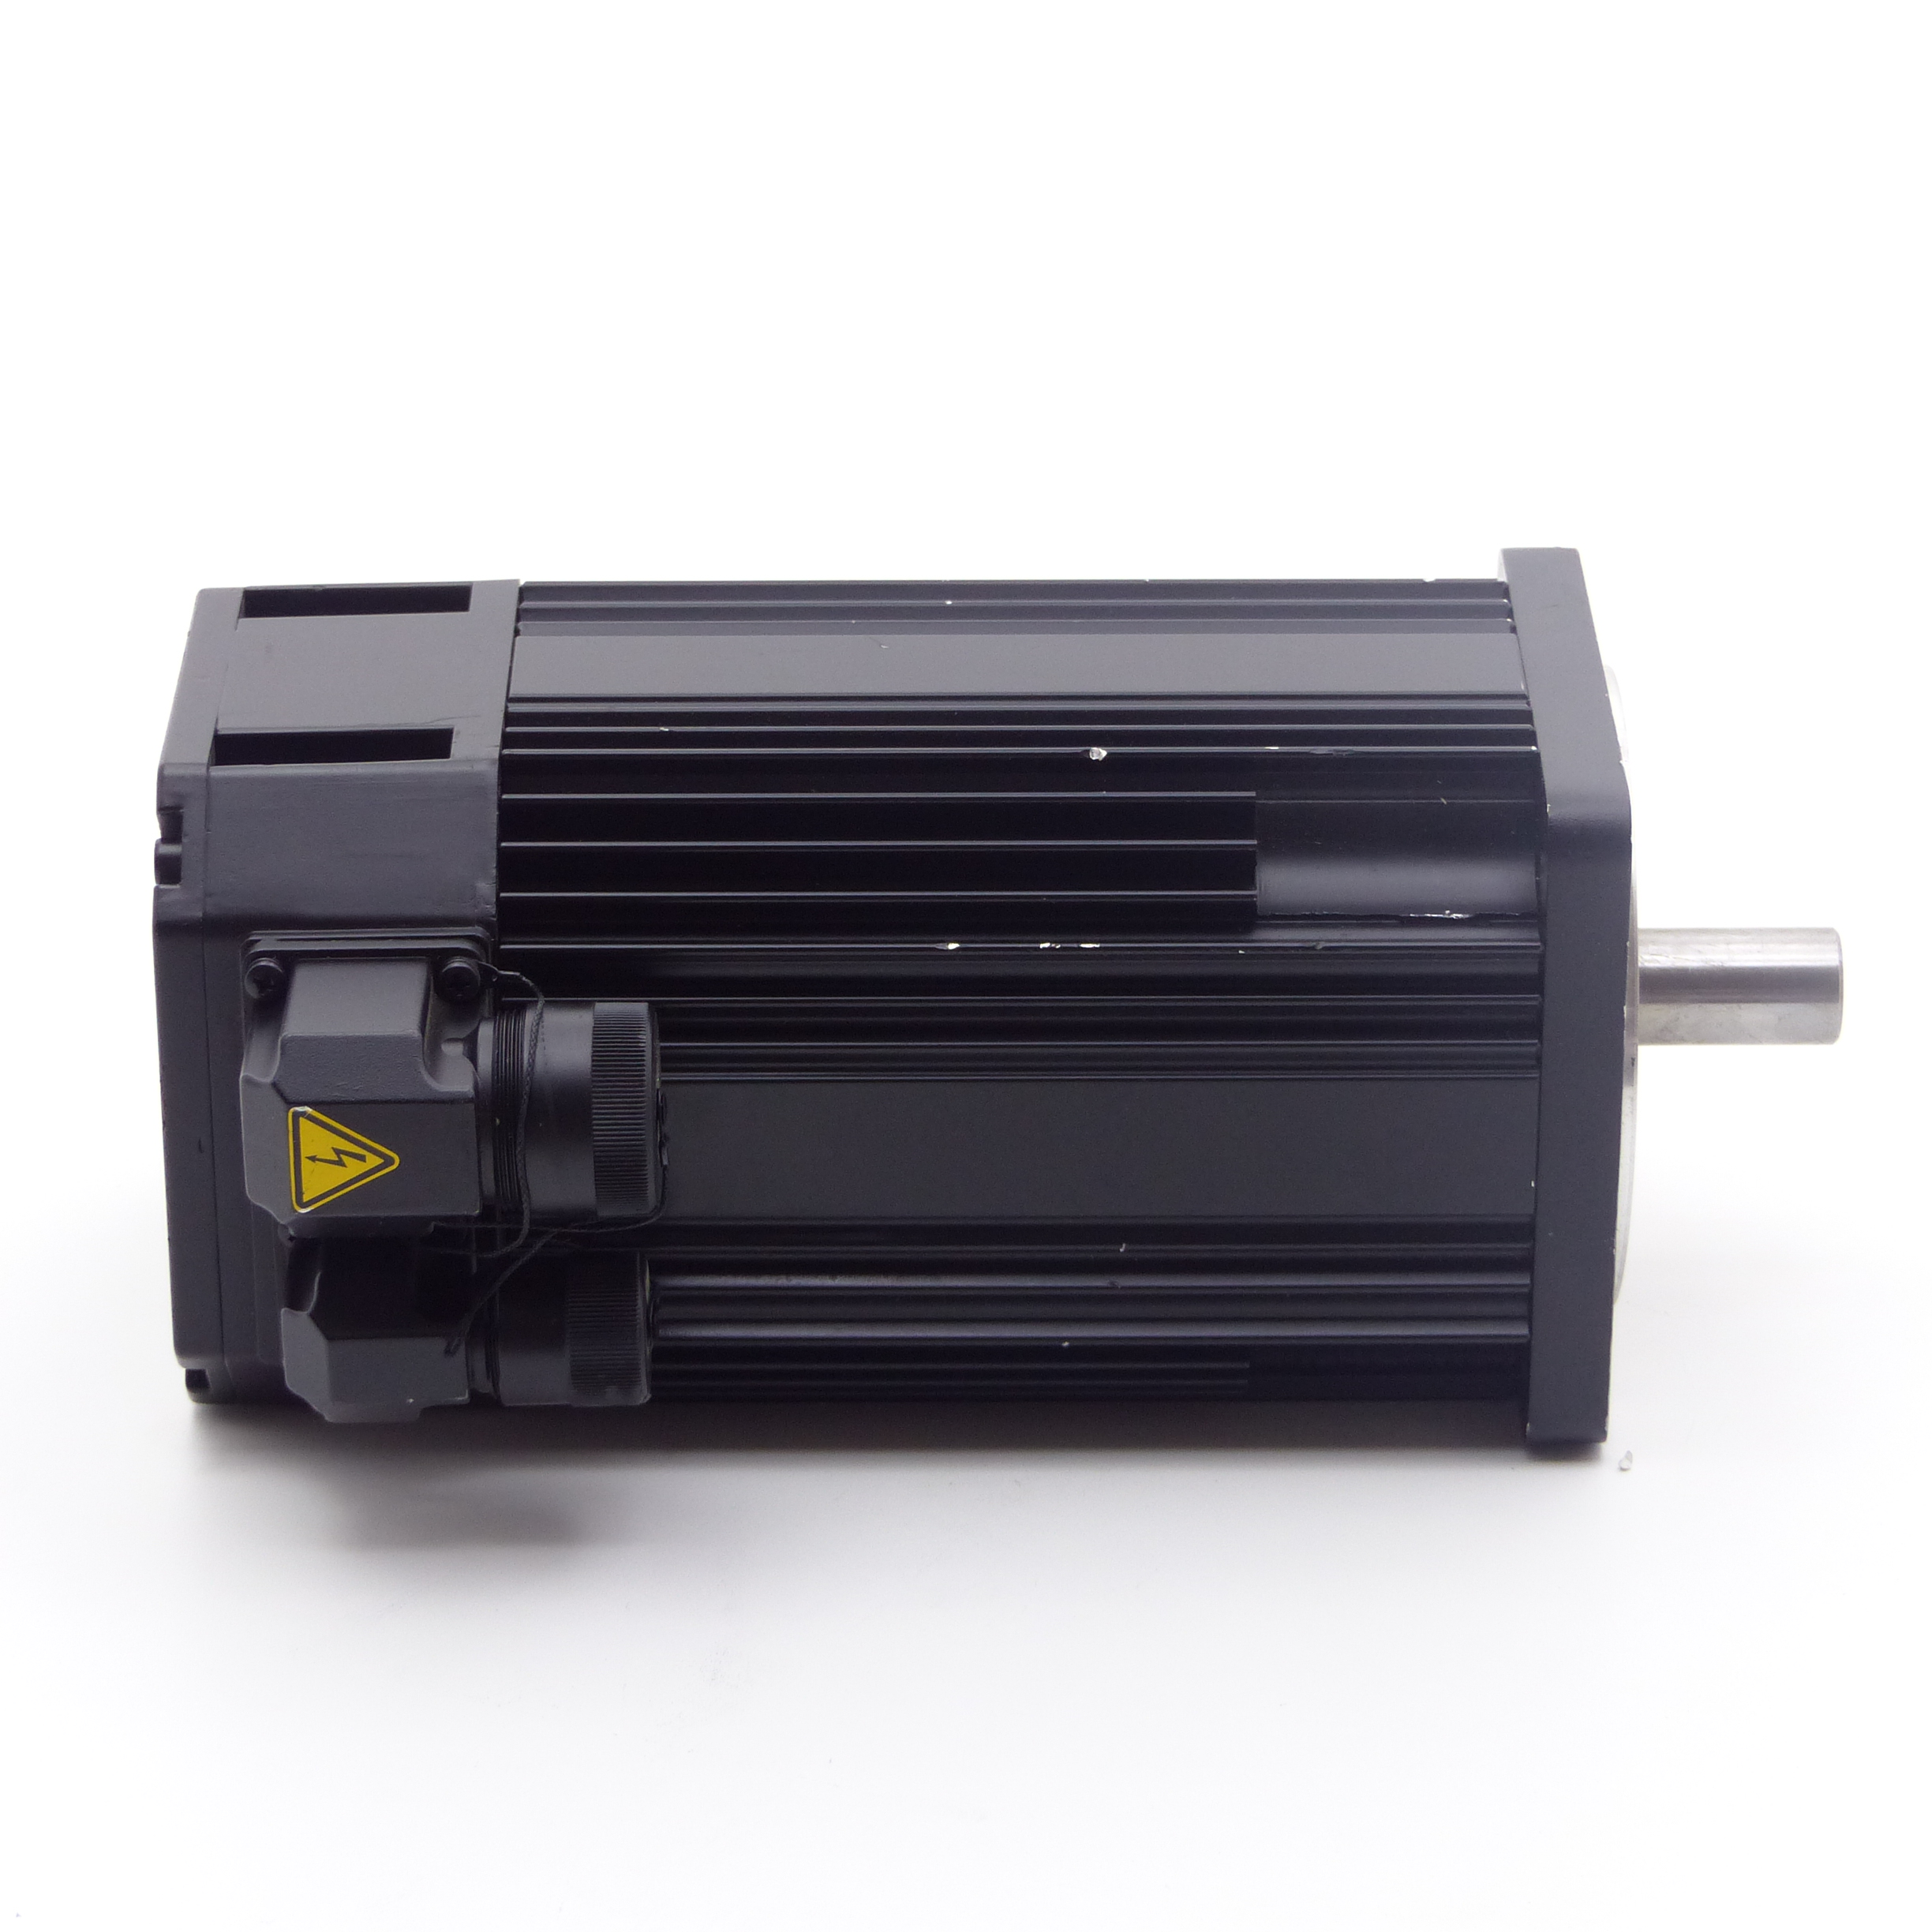 Brushless permanent magnet motor SE-B4.130.030-10.000 